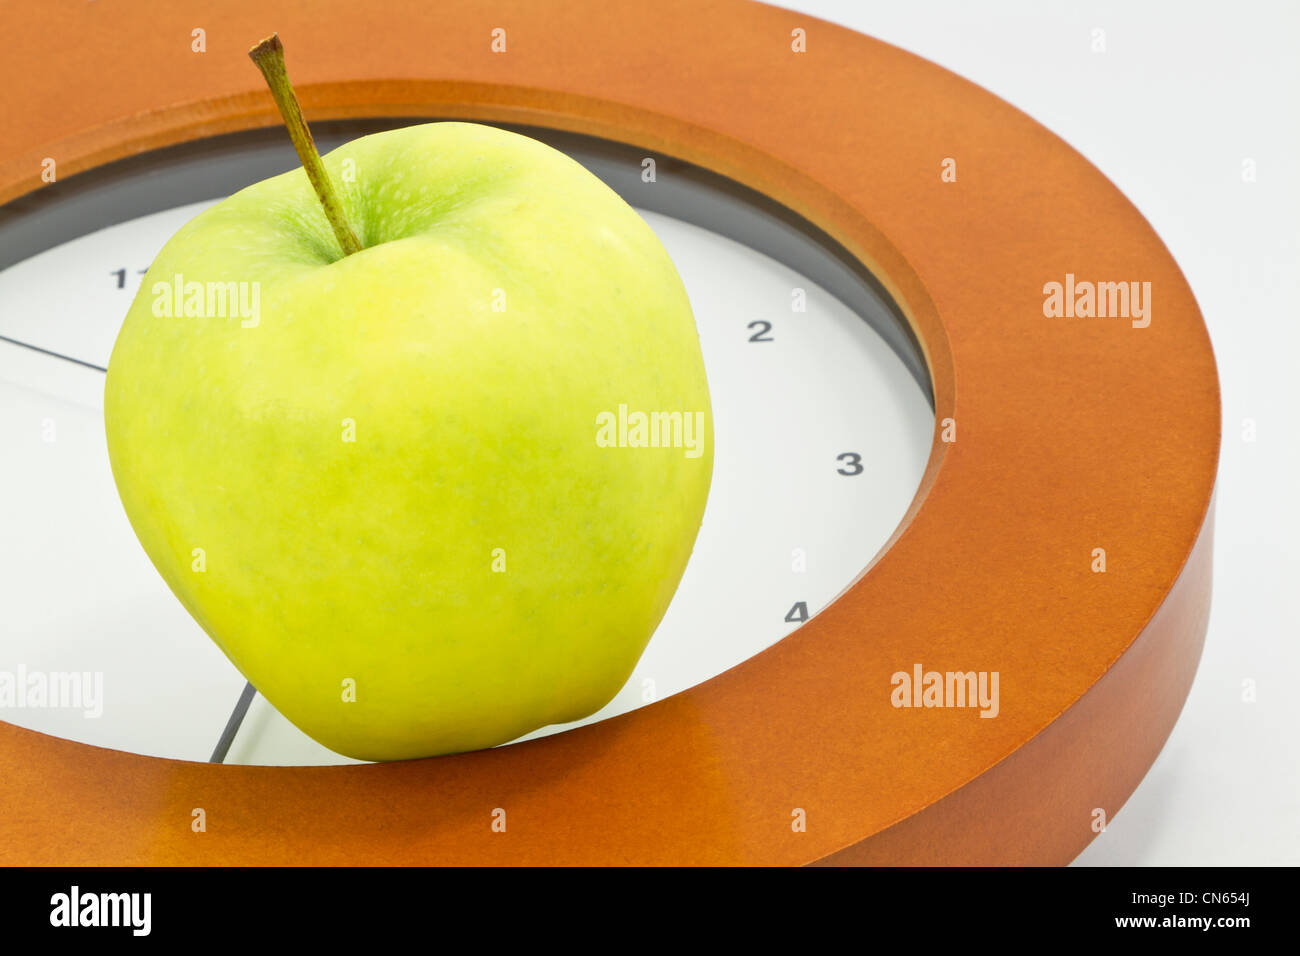 Golden Delicious, placé apple sur la face de l'horloge indique qu'il est temps de faire face à l'école, enseignant, et les enjeux de l'éducation. Banque D'Images